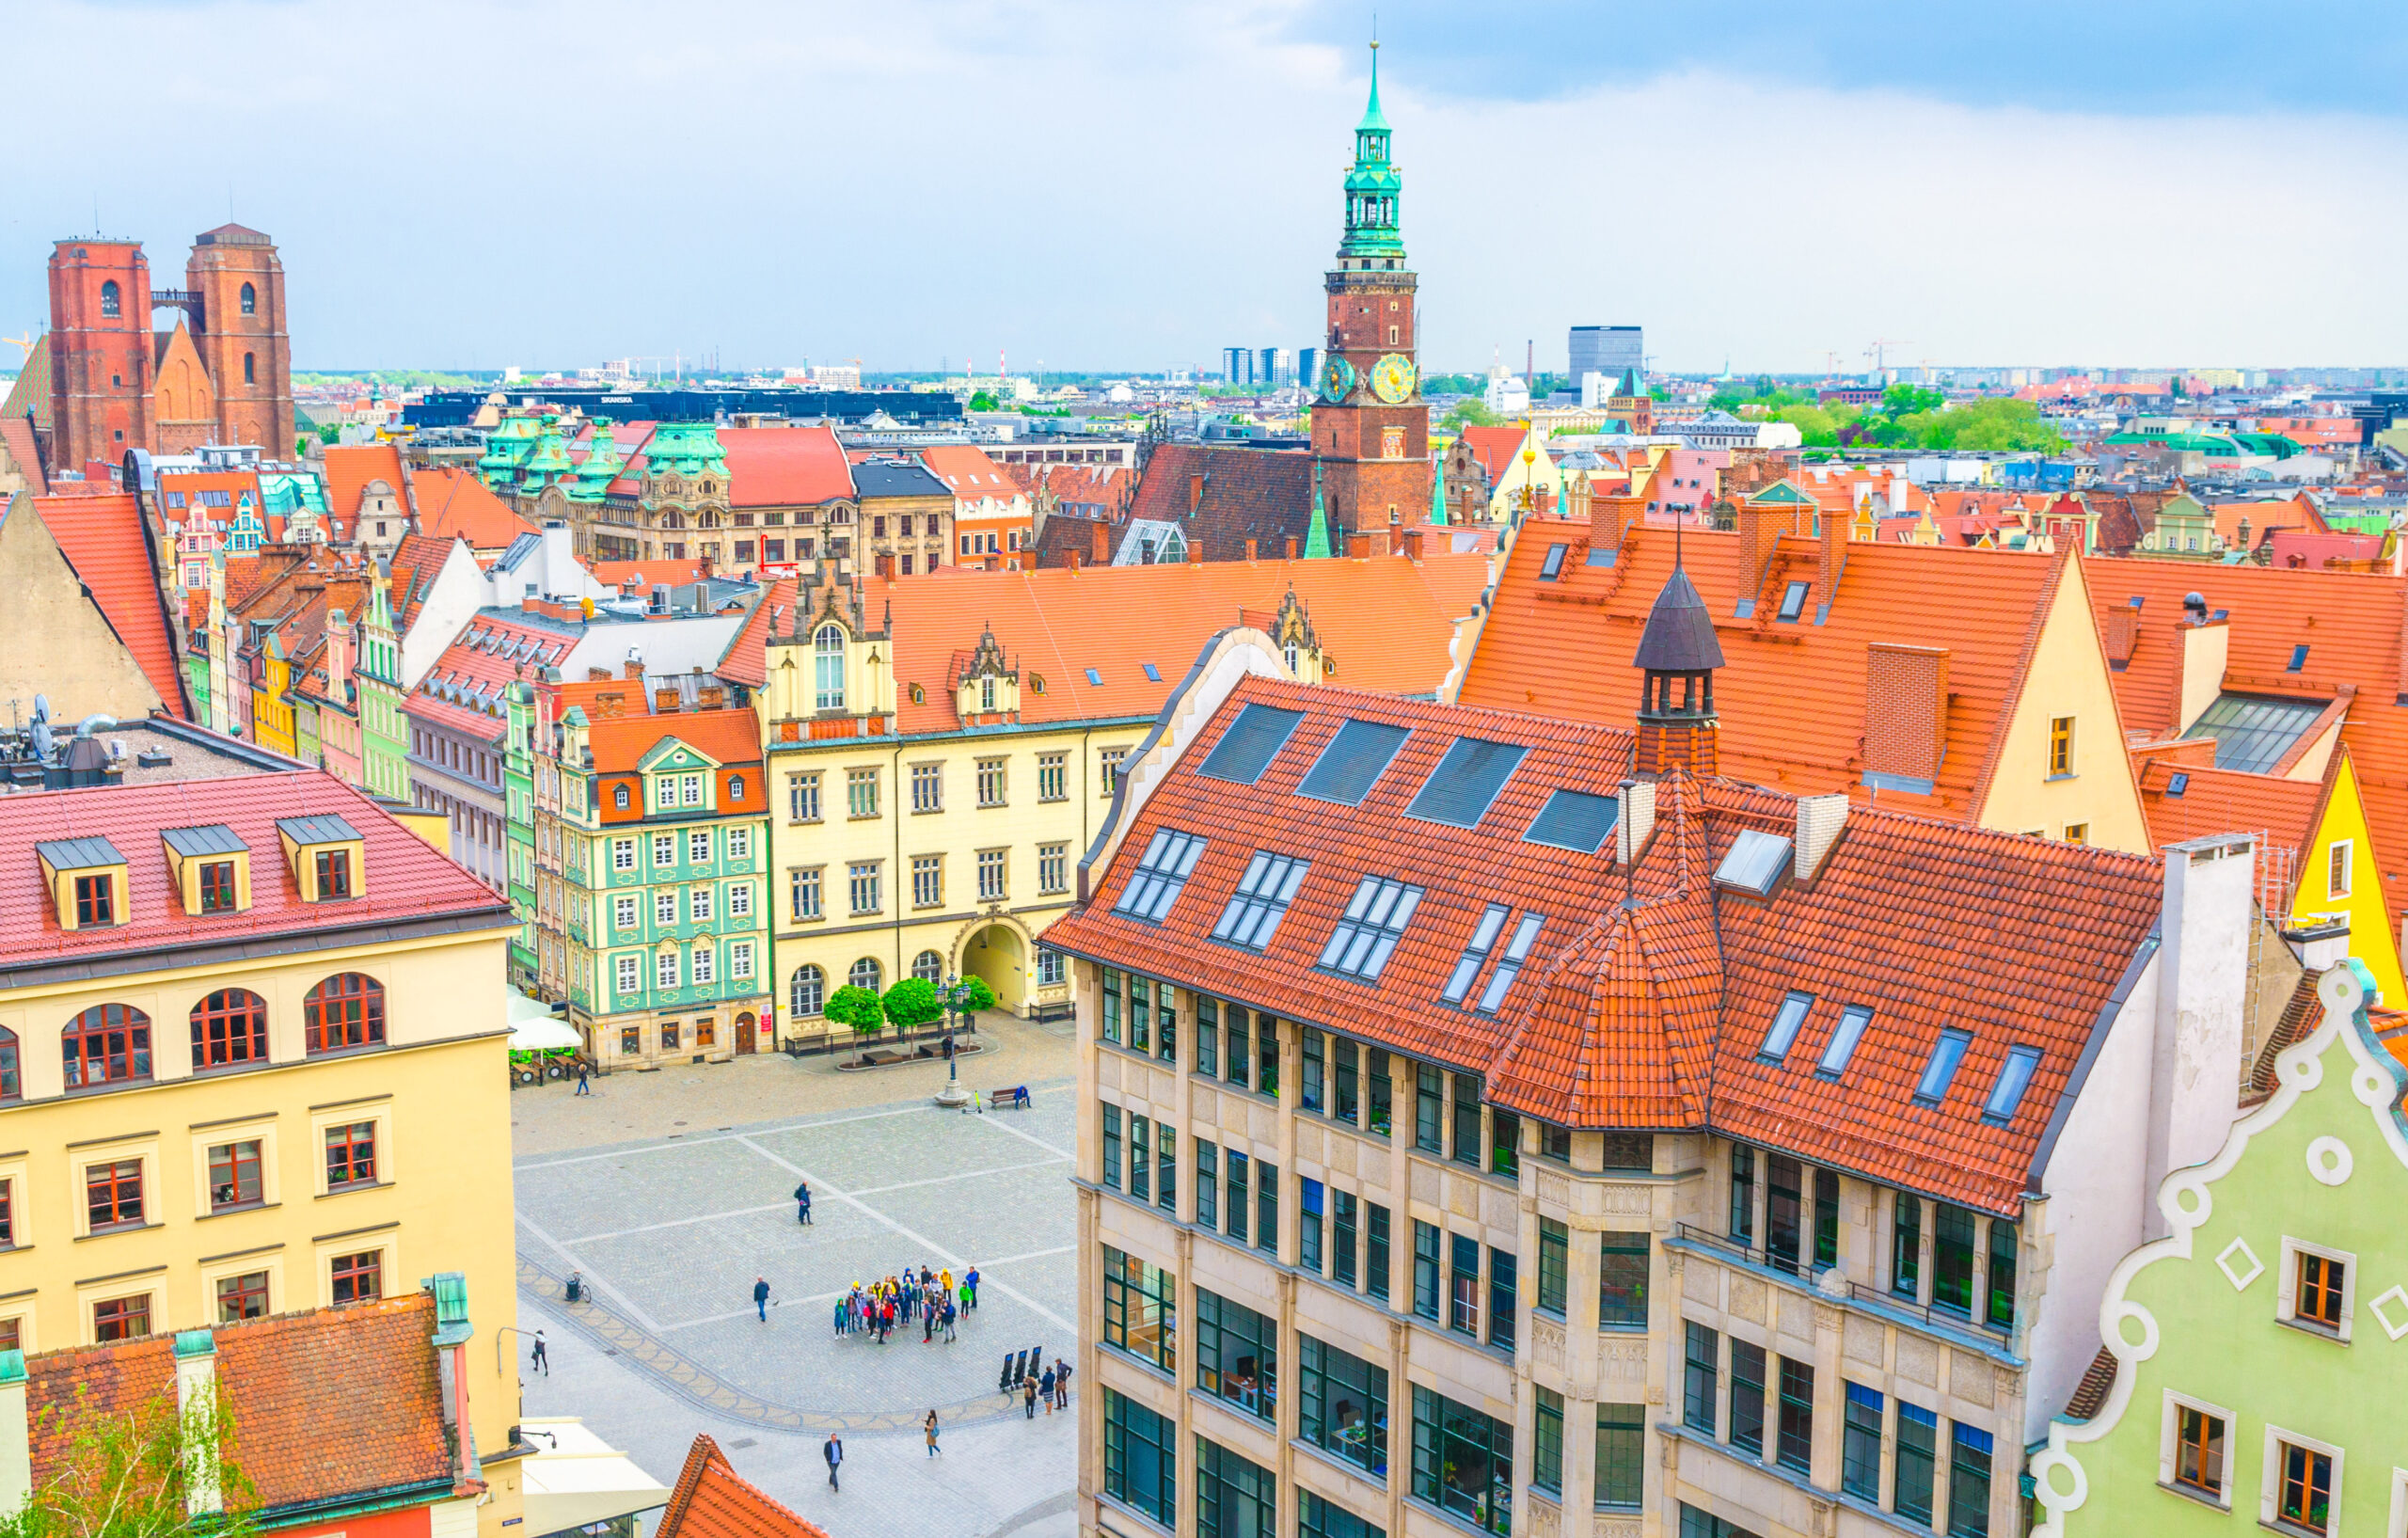 Na zdjęciu widać urokliwy i kolorowy Rynek we Wrocławiu, który jest jednym z najpiękniejszych rynków w Polsce. Ratusz oraz okalające go kamienice tworzą niepowtarzalny klimat miejsca, przyciągający turystów z całego świata. Zdjęcie podkreśla wartość turystyczną wrocławskiego rynku, który jest nie tylko pięknym zabytkiem, ale także centrum życia kulturalnego i rozrywkowego miasta.